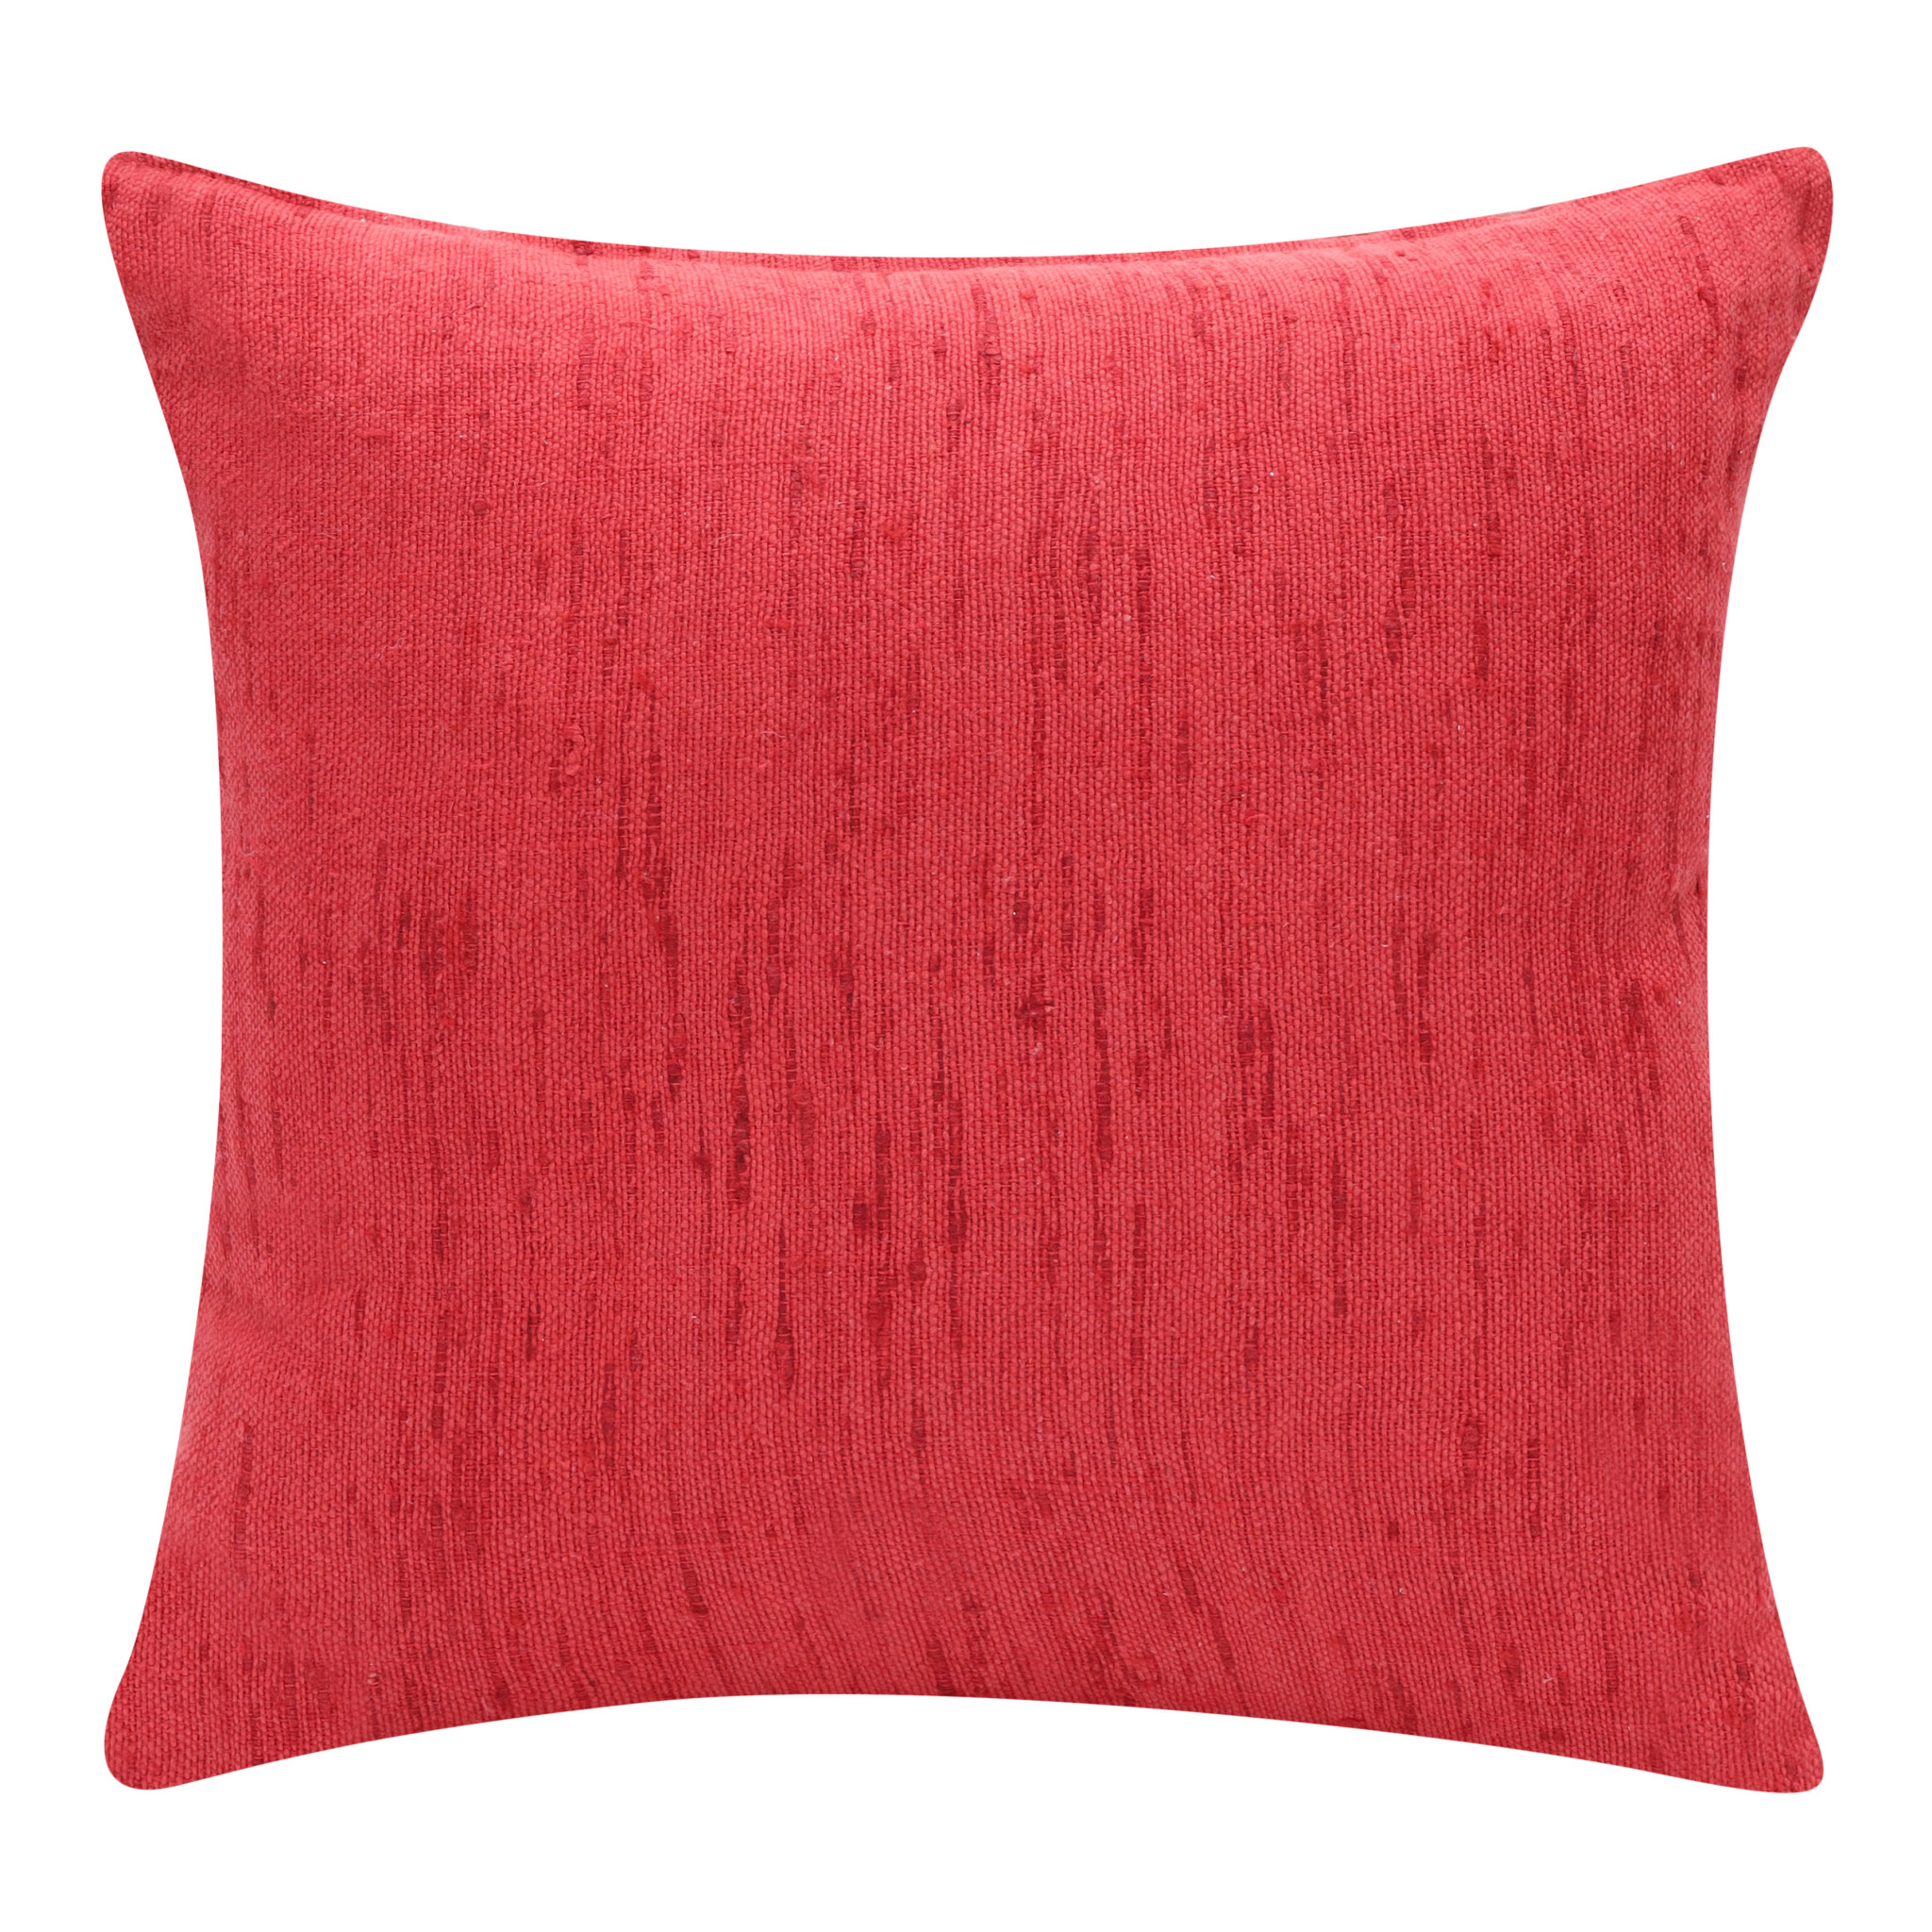 20" X 20" Coral Linen Zippered Pillow-517060-1